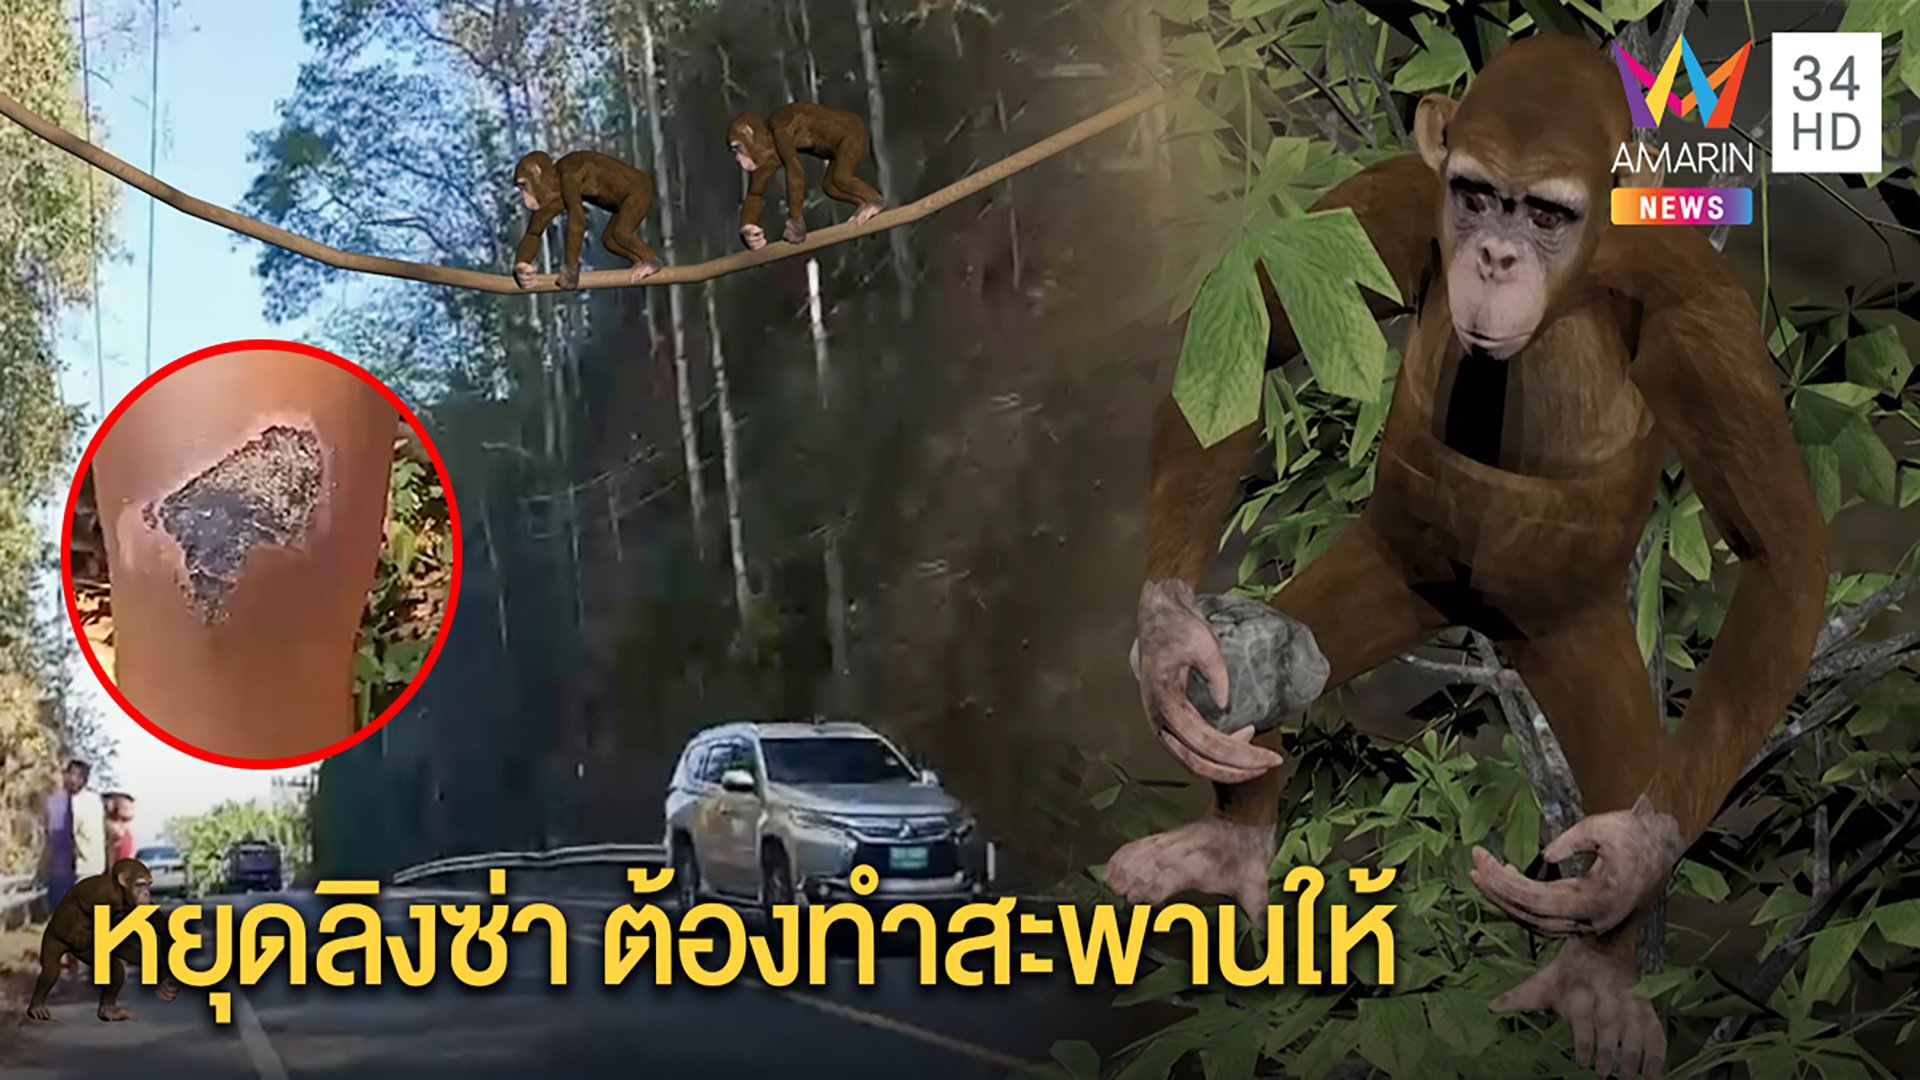 ลิงอันธพาล โมโหข้ามถนนไม่ได้ ปาหินหยุดรถ คนล้มเจ็บ จนท.จ่อขึงสลิงเป็นสะพานให้ | ทุบโต๊ะข่าว | 22 มี.ค. 63 | AMARIN TVHD34